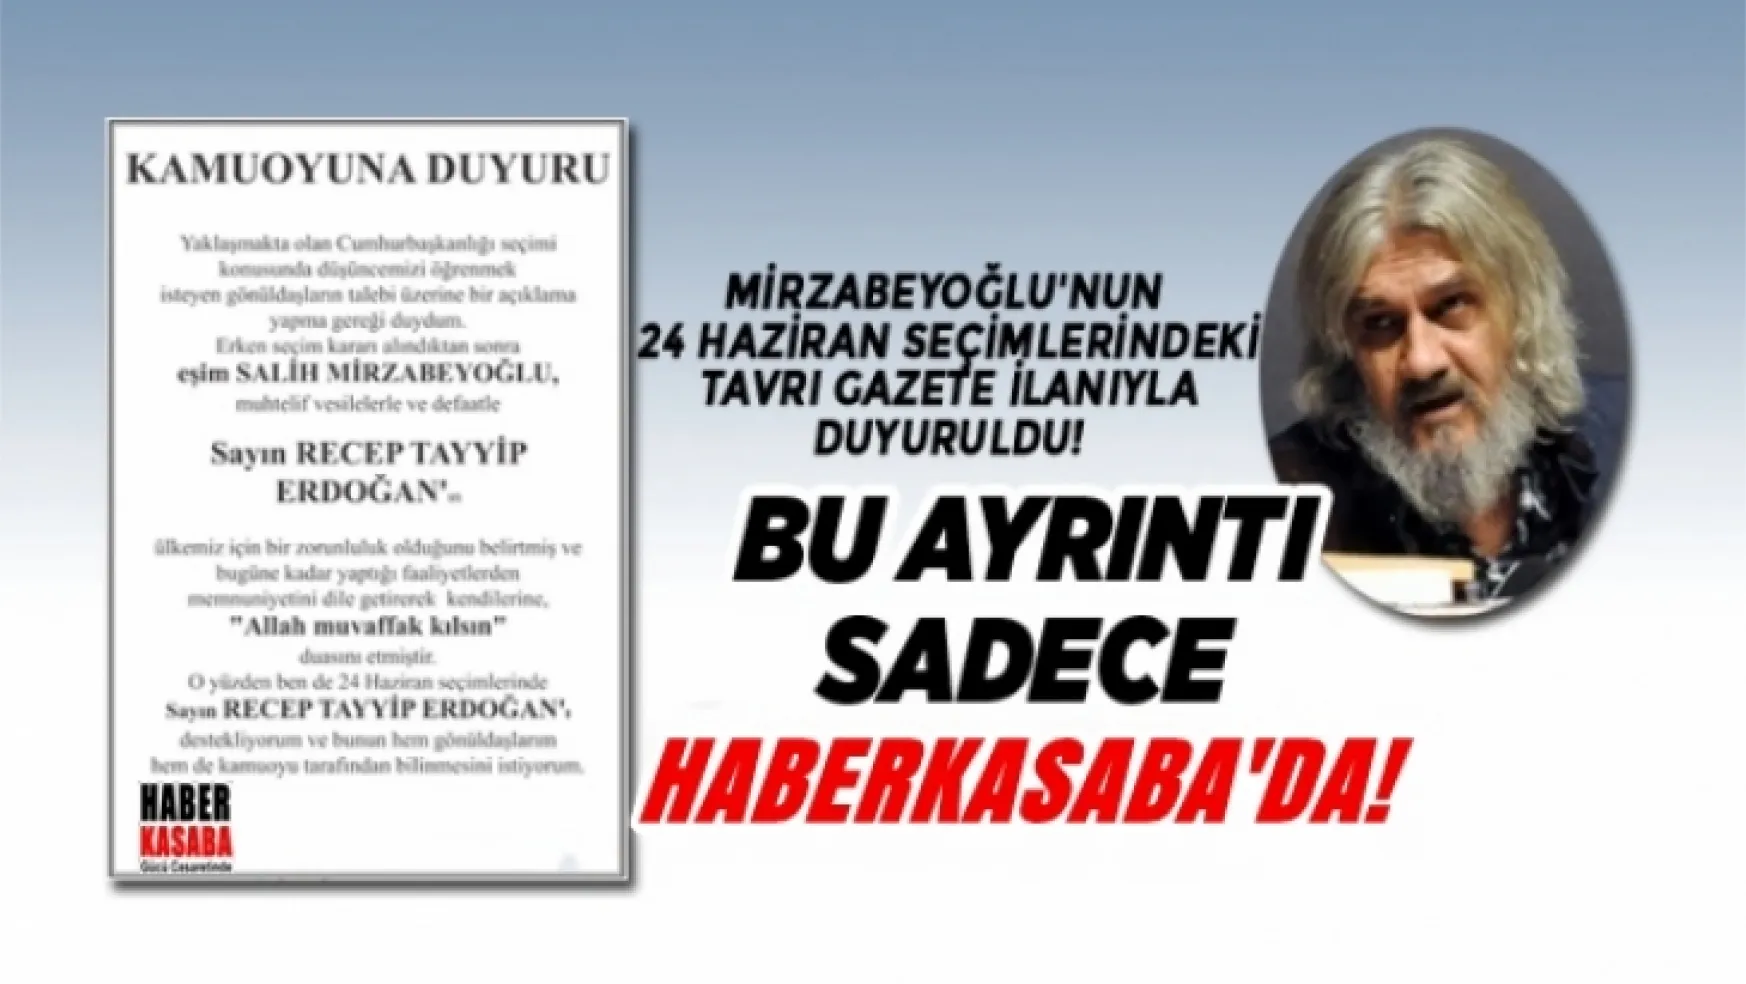 Salih Mirzabeyoğlu'nun 24 Haziran seçimlerindeki tavrı gazete ilanıyla duyuruldu!